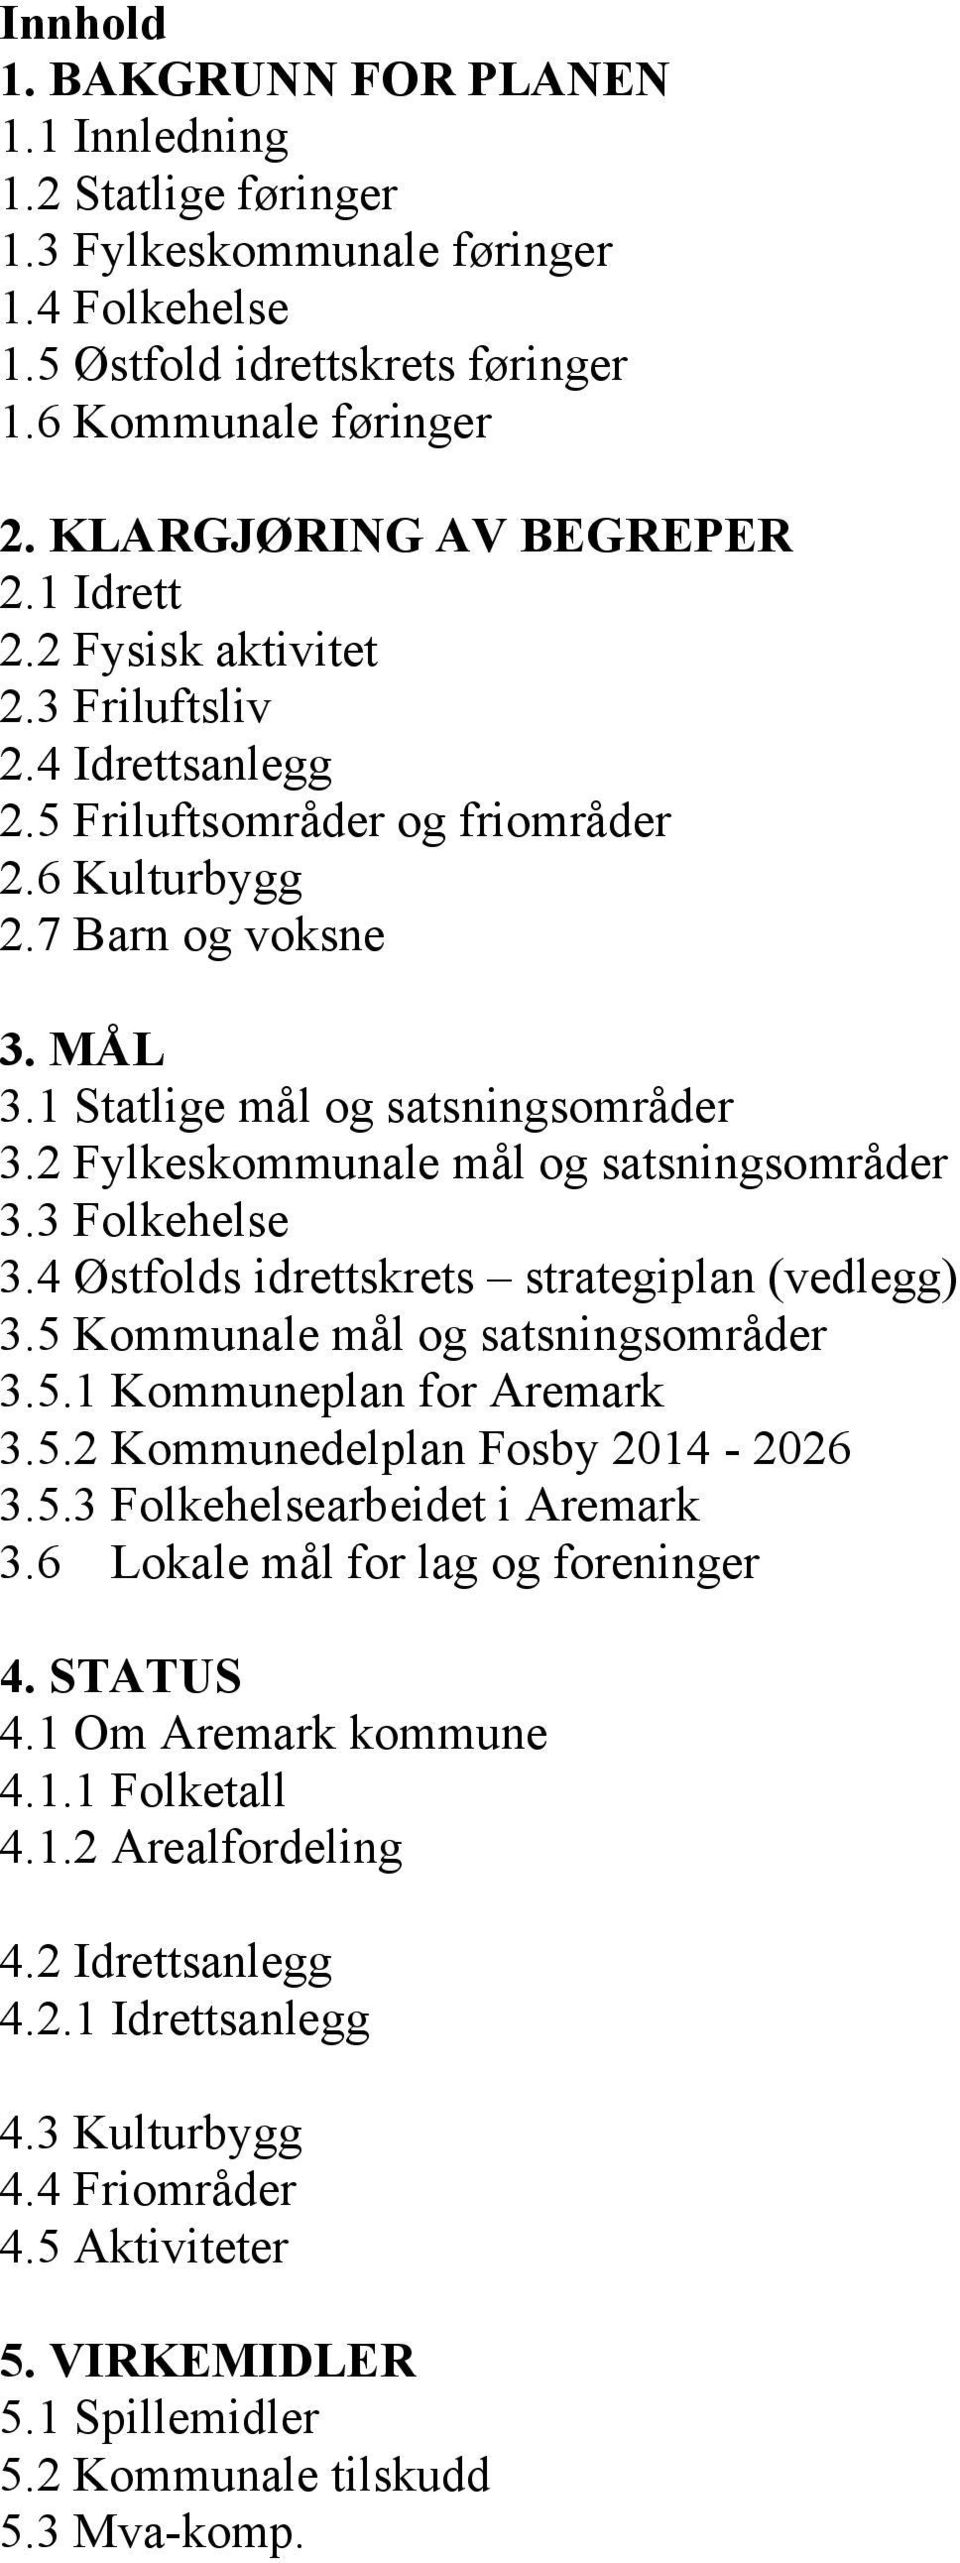 2 Fylkeskommunale mål og satsningsområder 3.3 Folkehelse 3.4 Østfolds idrettskrets strategiplan (vedlegg) 3.5 Kommunale mål og satsningsområder 3.5.1 Kommuneplan for Aremark 3.5.2 Kommunedelplan Fosby 2014-2026 3.